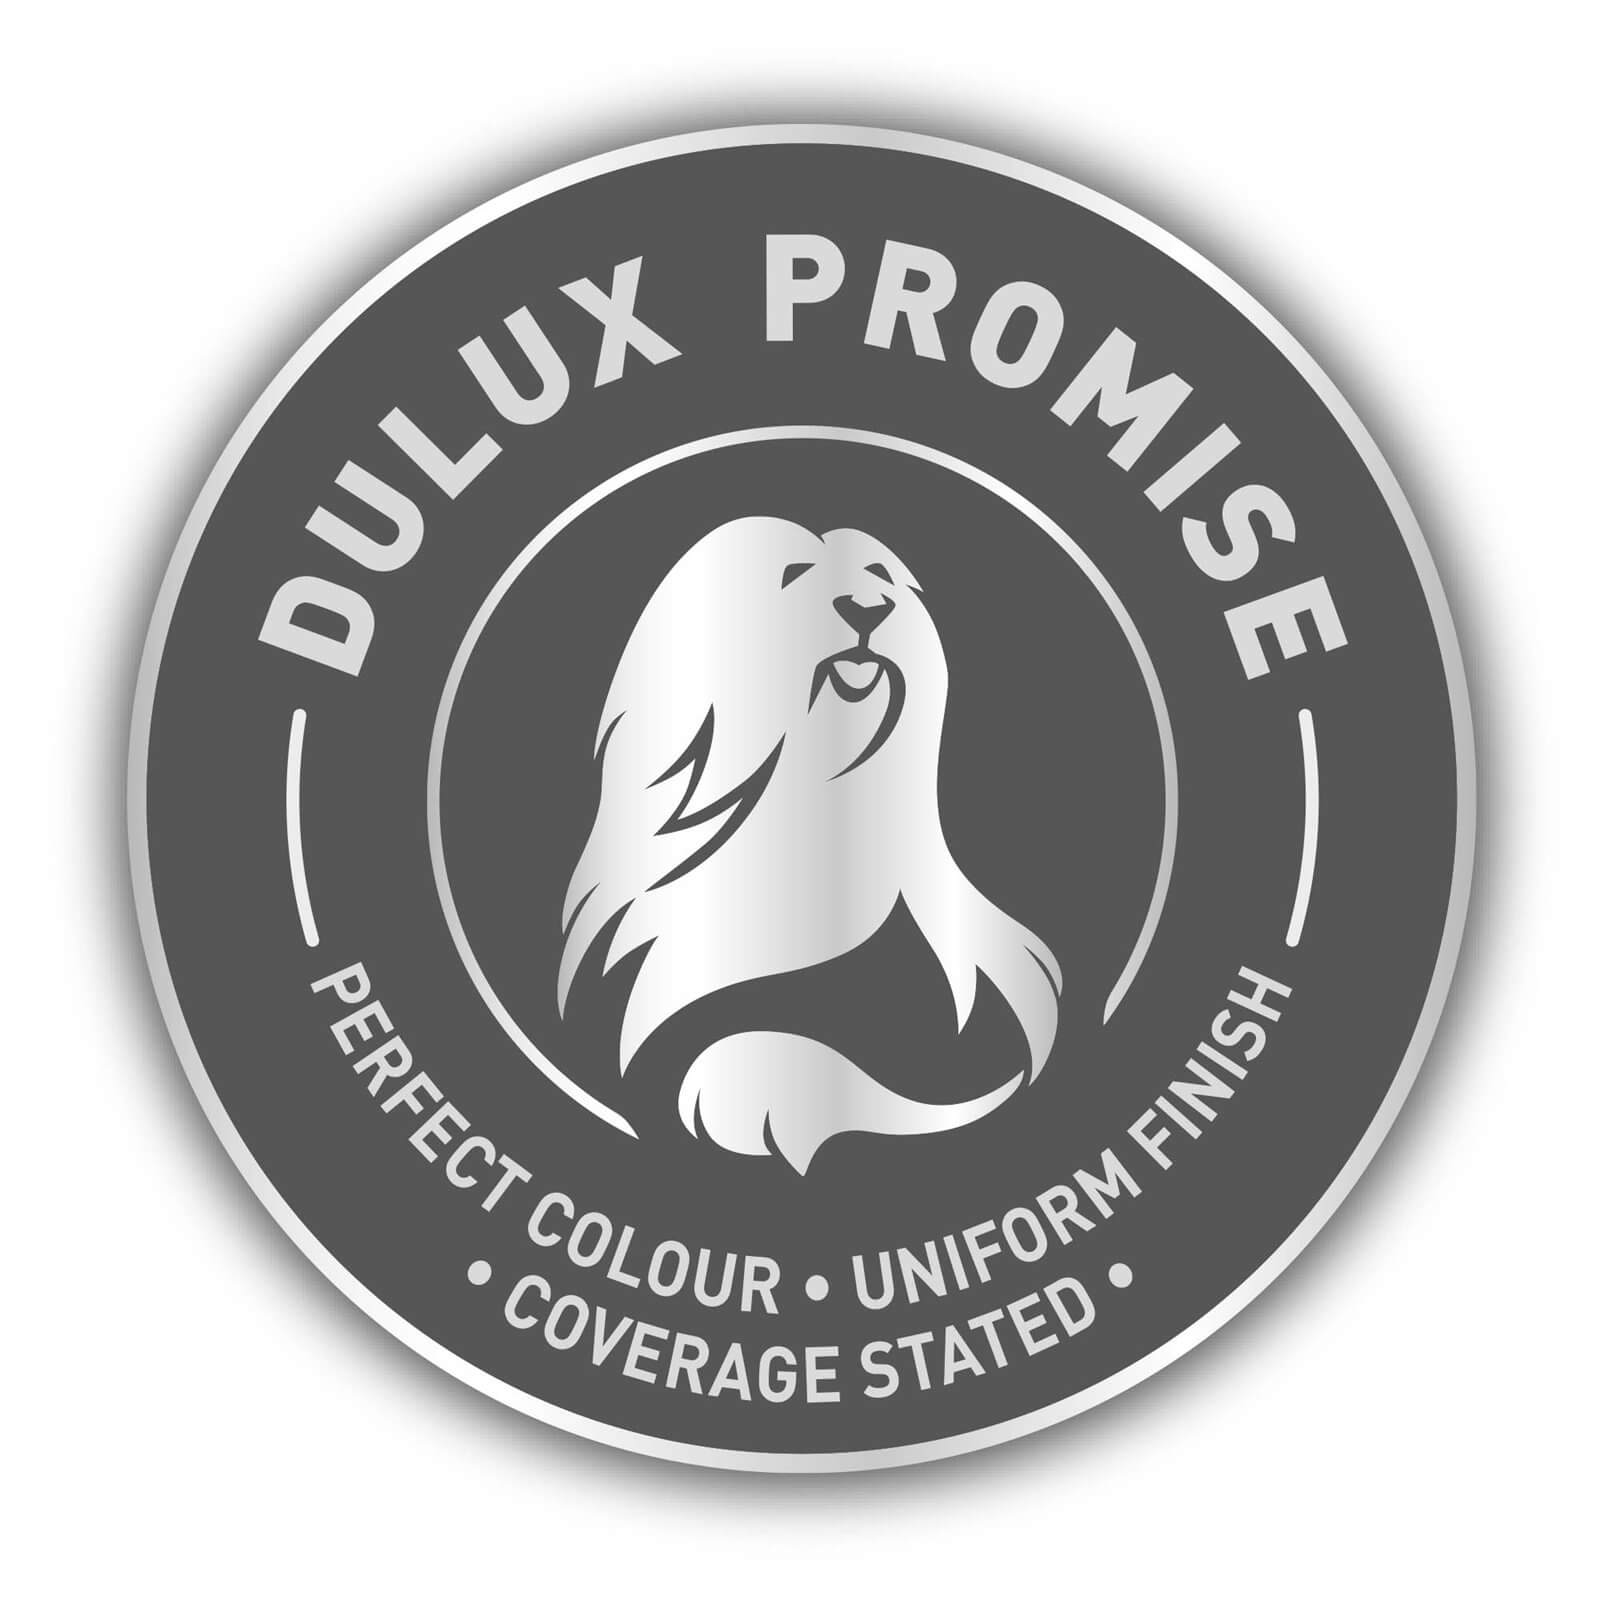 Dulux Matt Emulsion Paint Chic Shadow - 2.5L